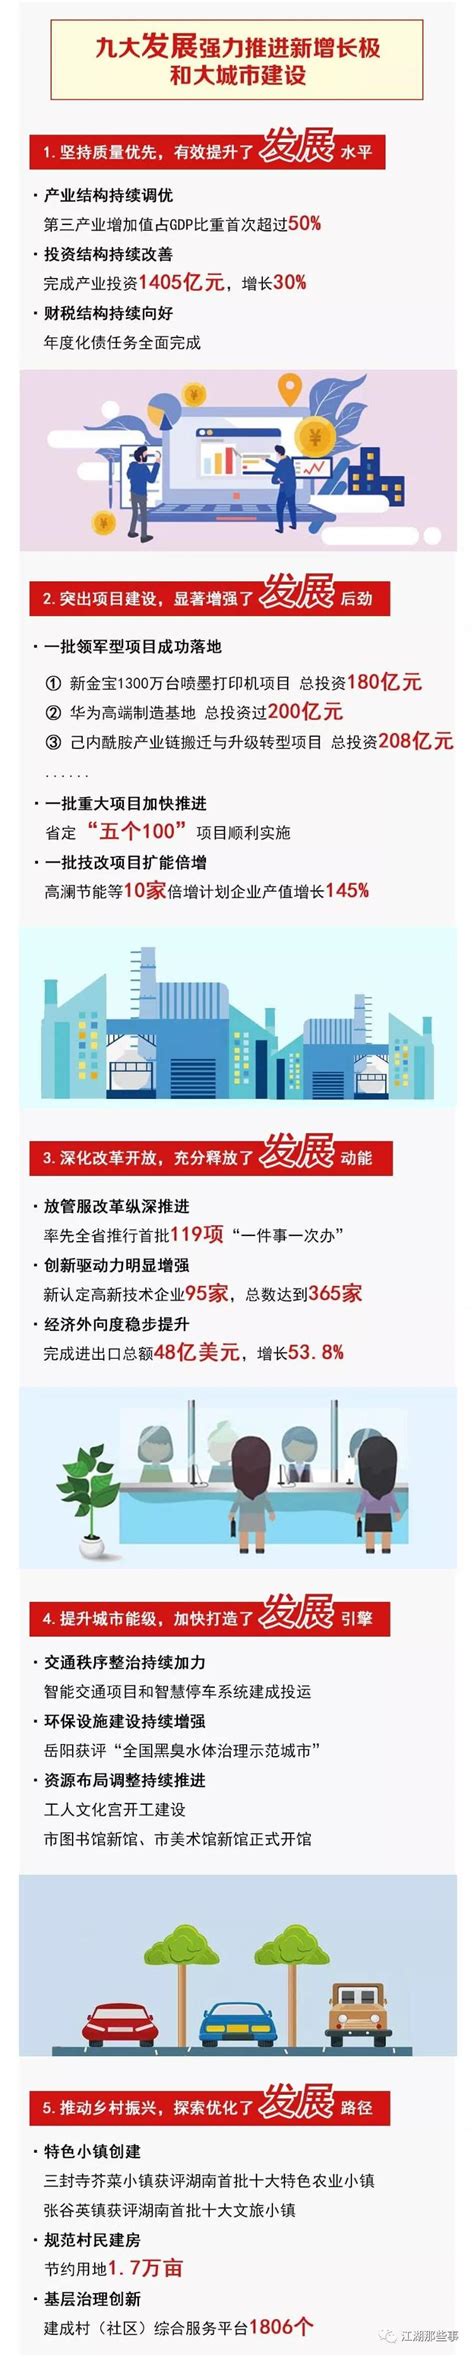 一图读懂2020年《政府工作报告》_图解_首都之窗_北京市人民政府门户网站